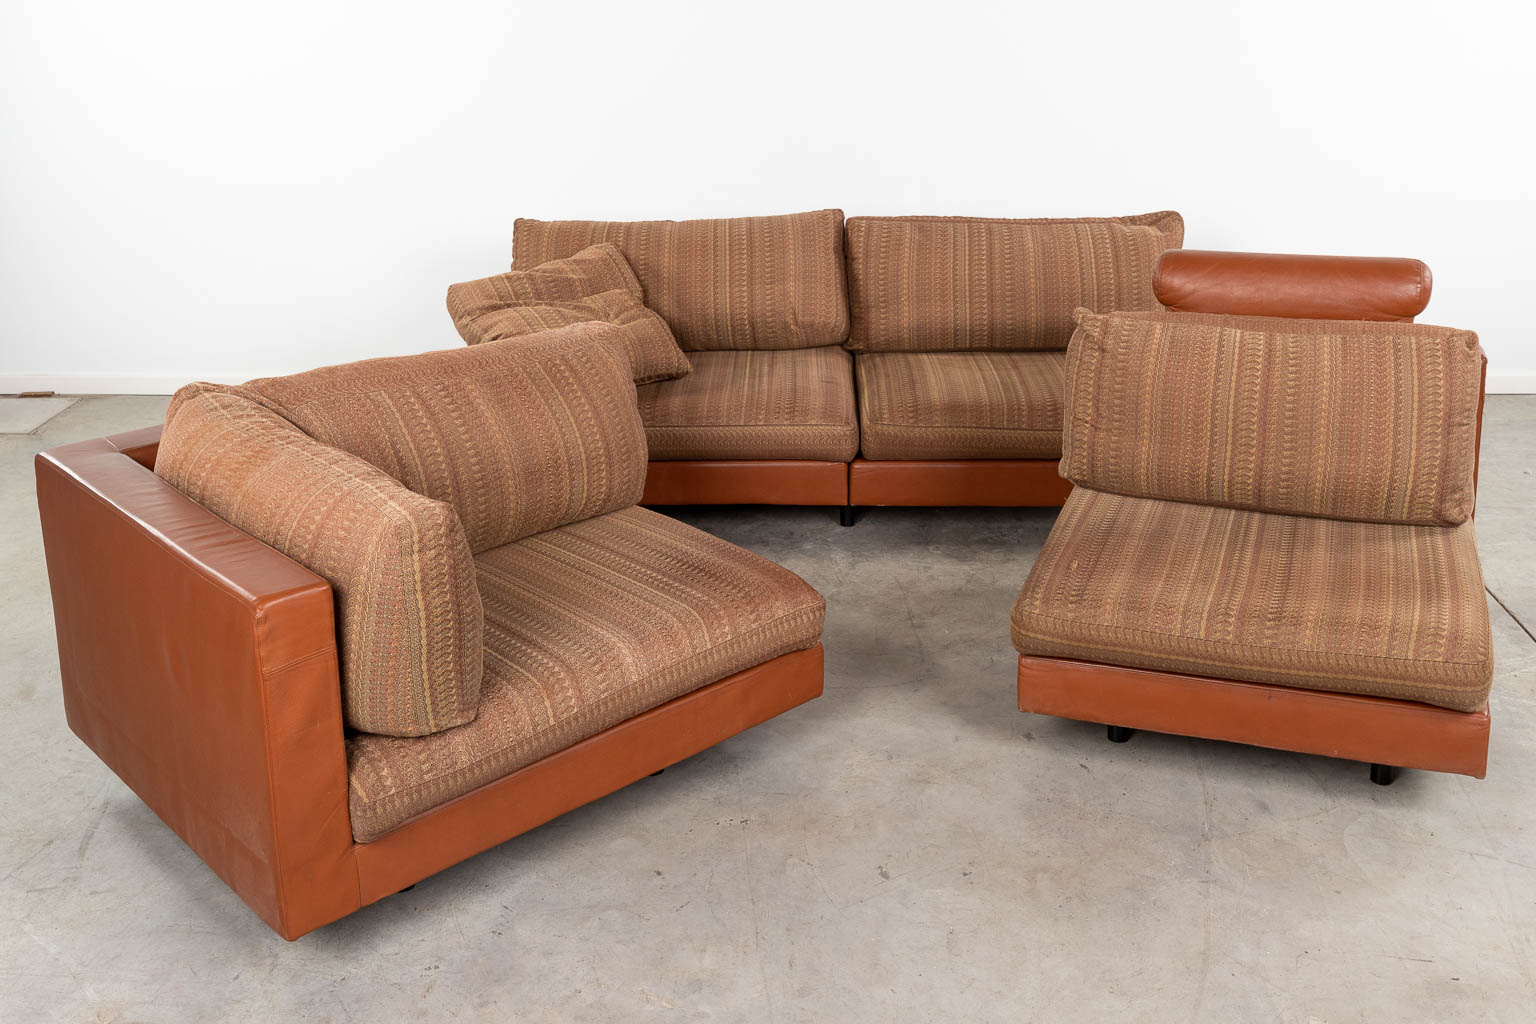  Antonio CITTERIO (1950) A large sofa for B&B Italia, fabric and leather. 